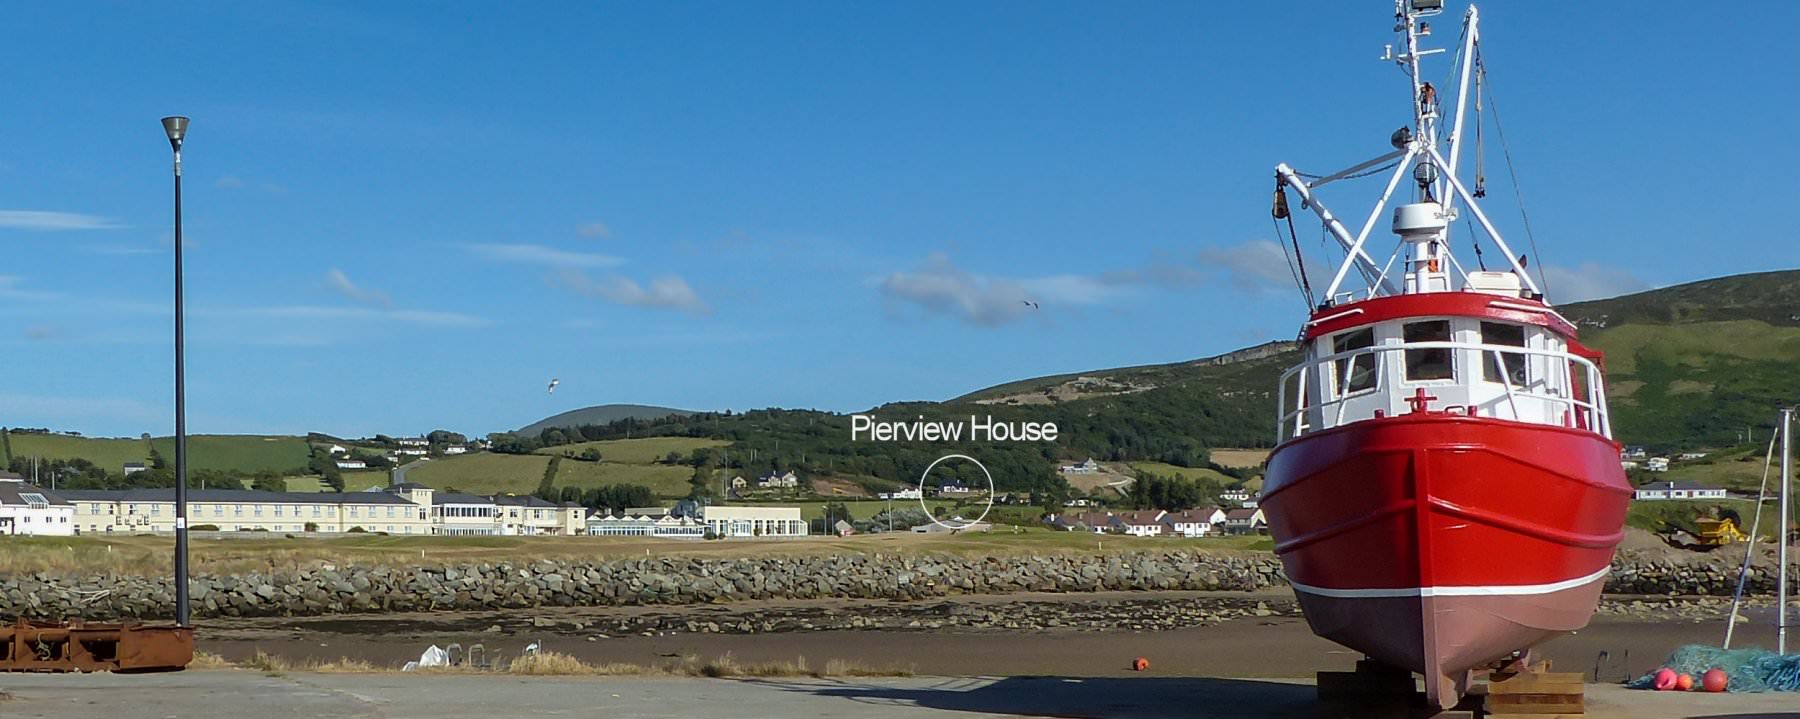 Pierview House Buncrana Inishowen